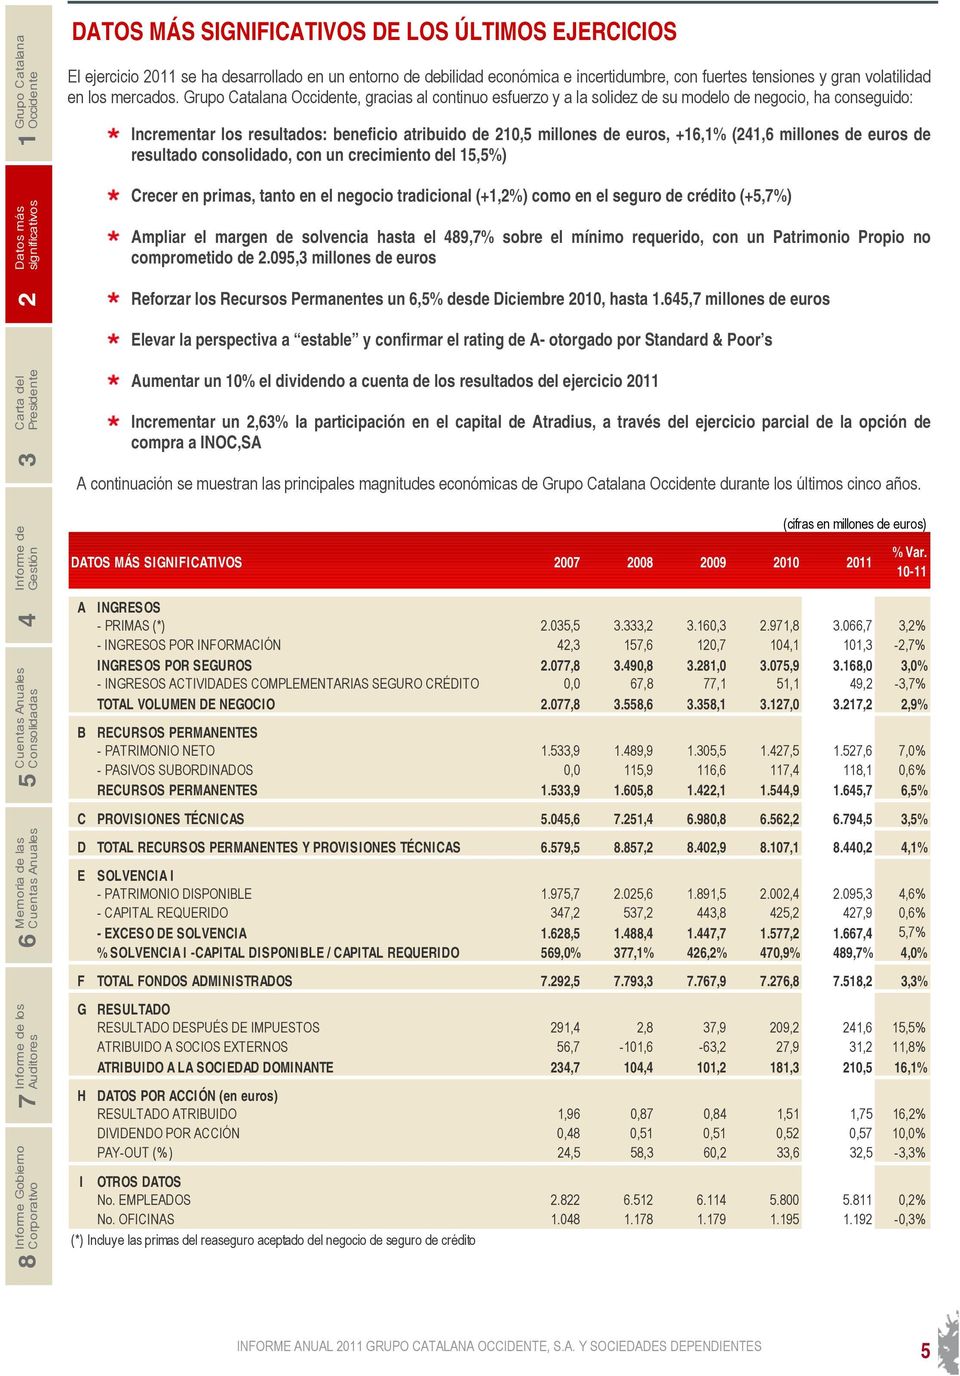 Grupo Catalana, gracias al continuo esfuerzo y a la solidez de su modelo de negocio, ha conseguido: Incrementar los resultados: beneficio atribuido de 210,5 millones de euros, +16,1% (241,6 millones